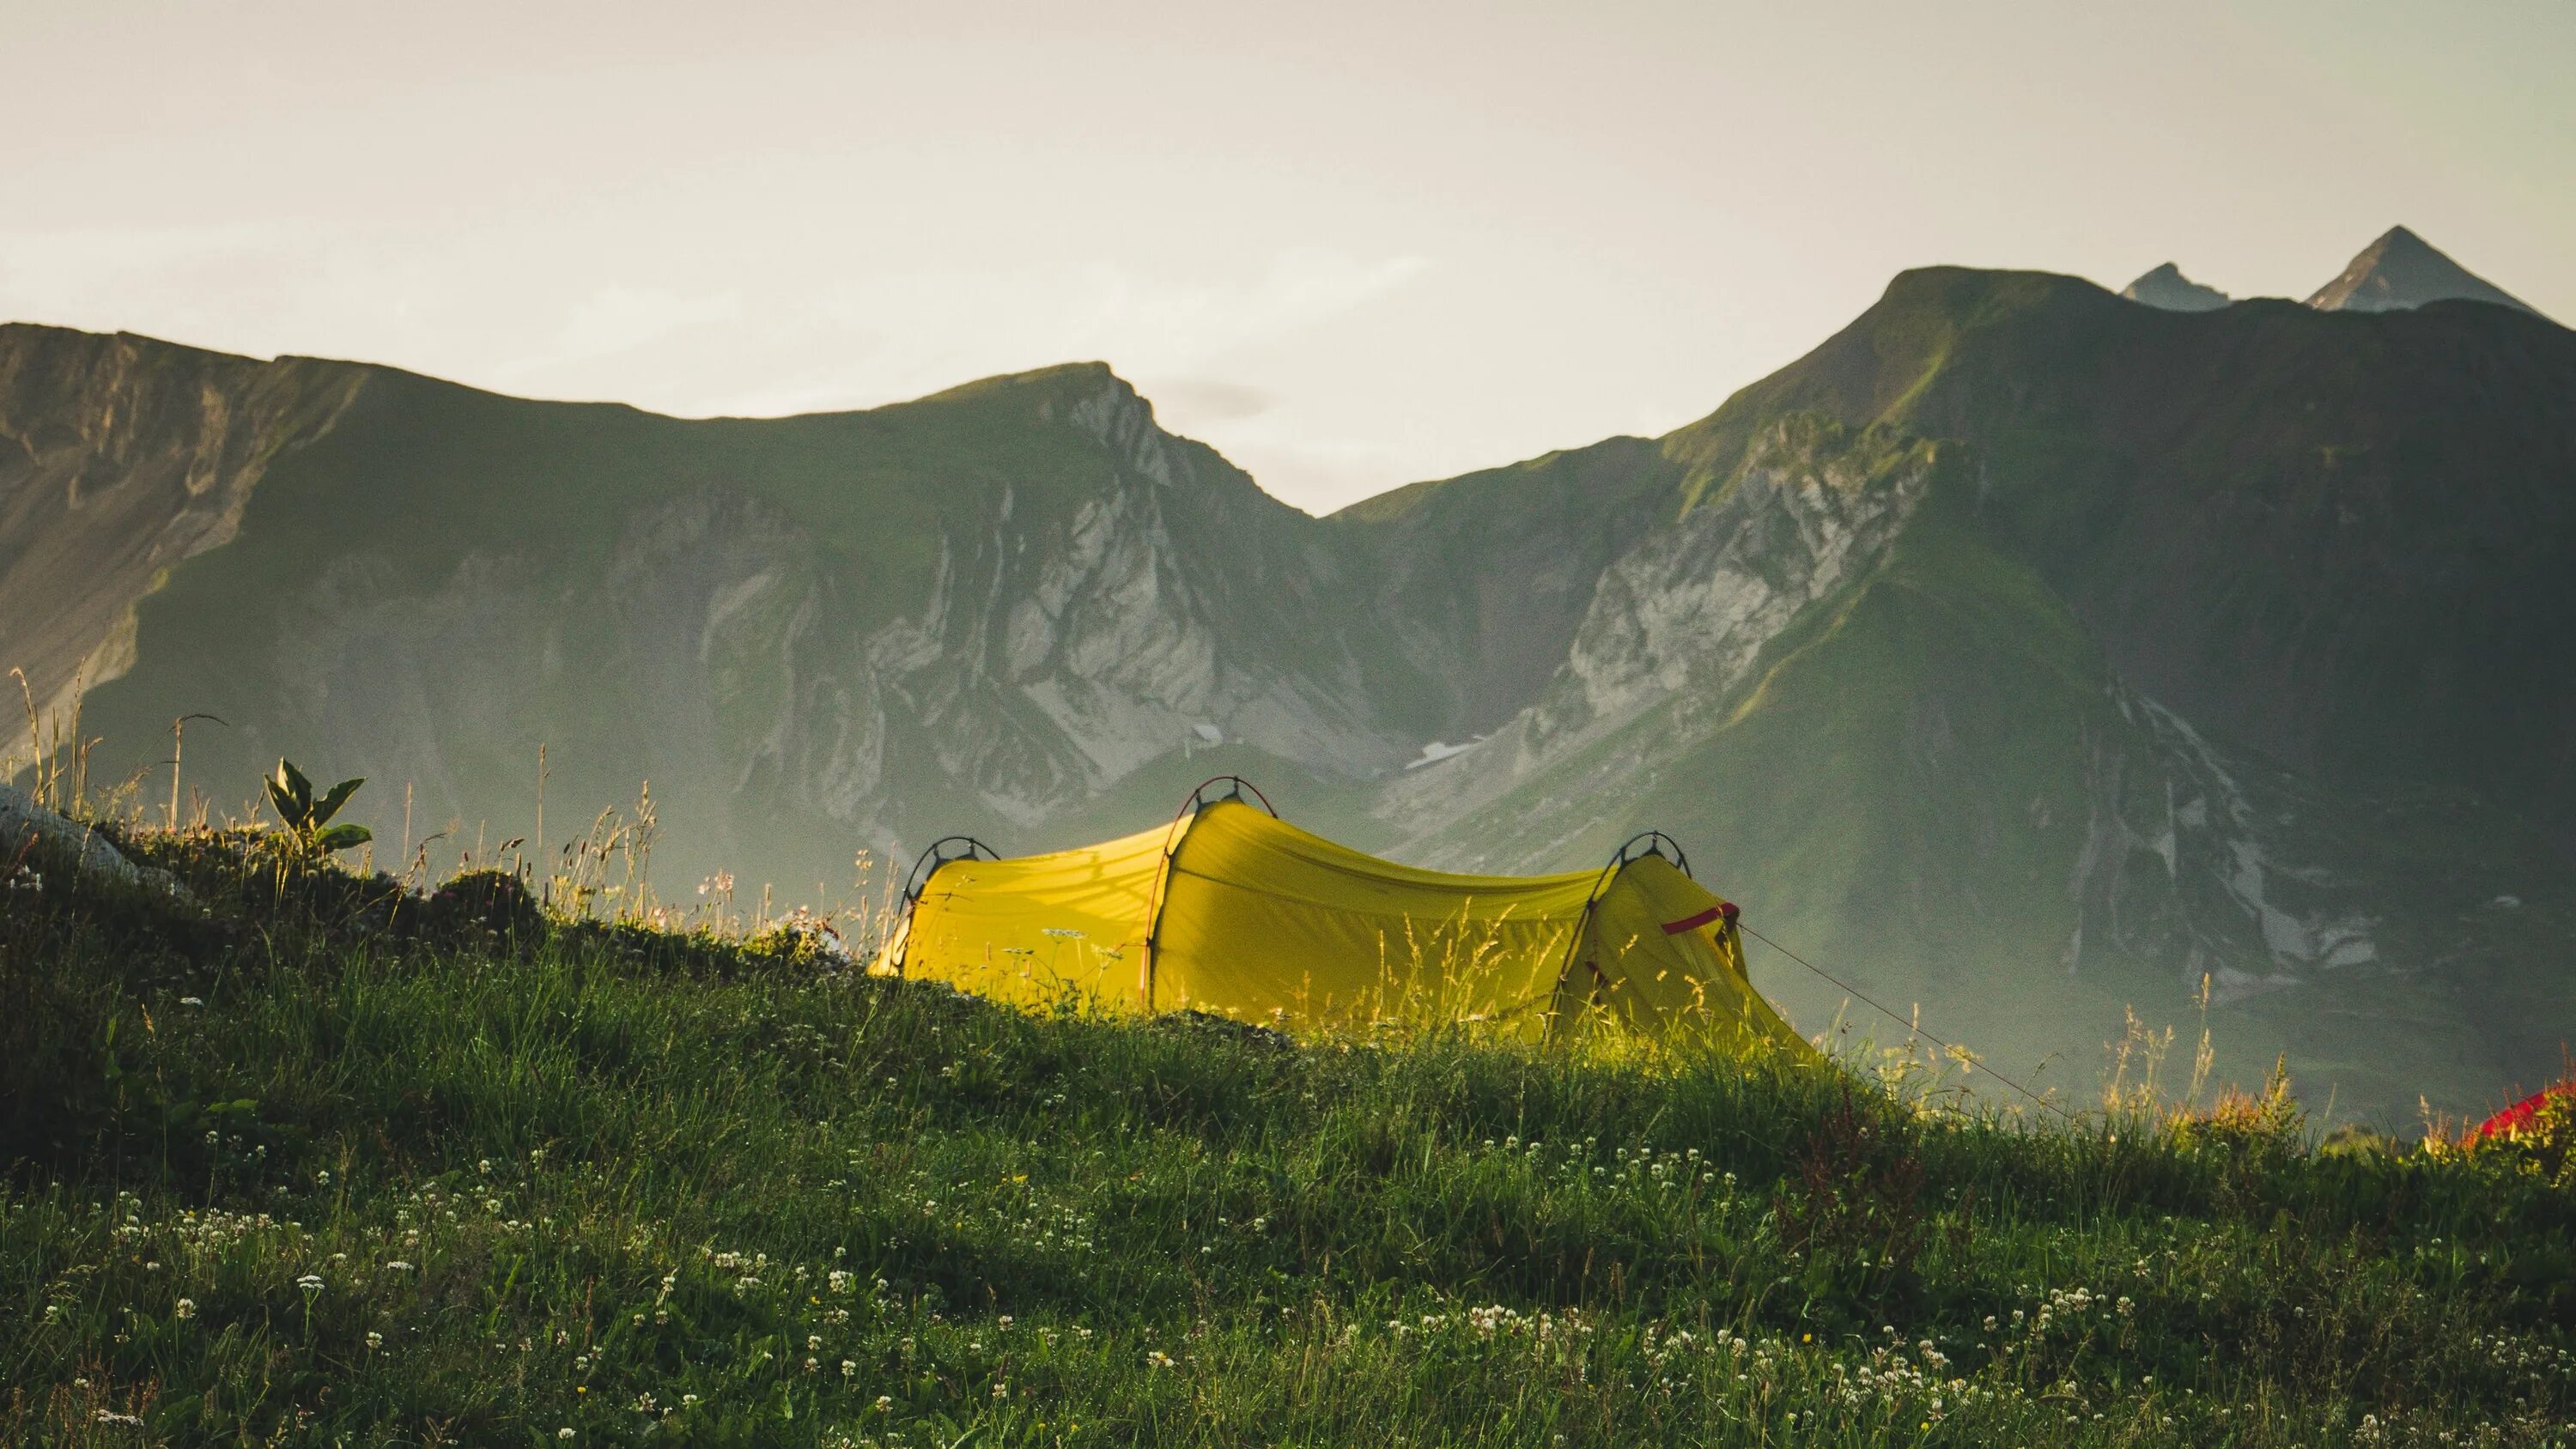 Палатка на природе. Палатка в горах. Туристическая палатка на природе. Кемпинг в горах. Mountains camping